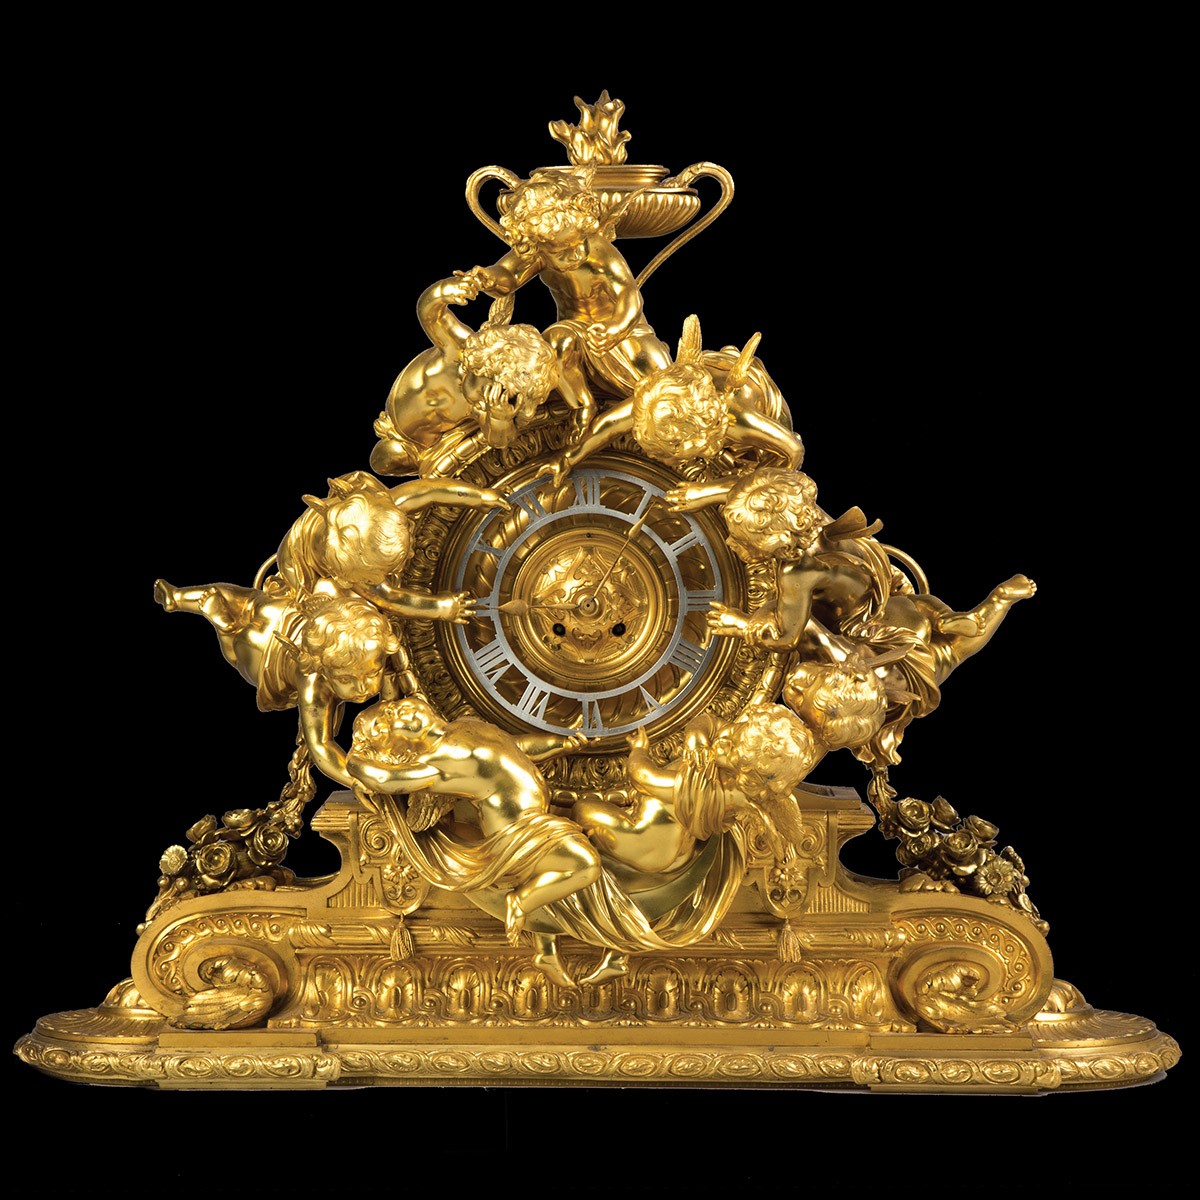 Monumental French Napoleon III Gilt Bronze Mantle Clock With Cherubs. Monumental French Napoleon III